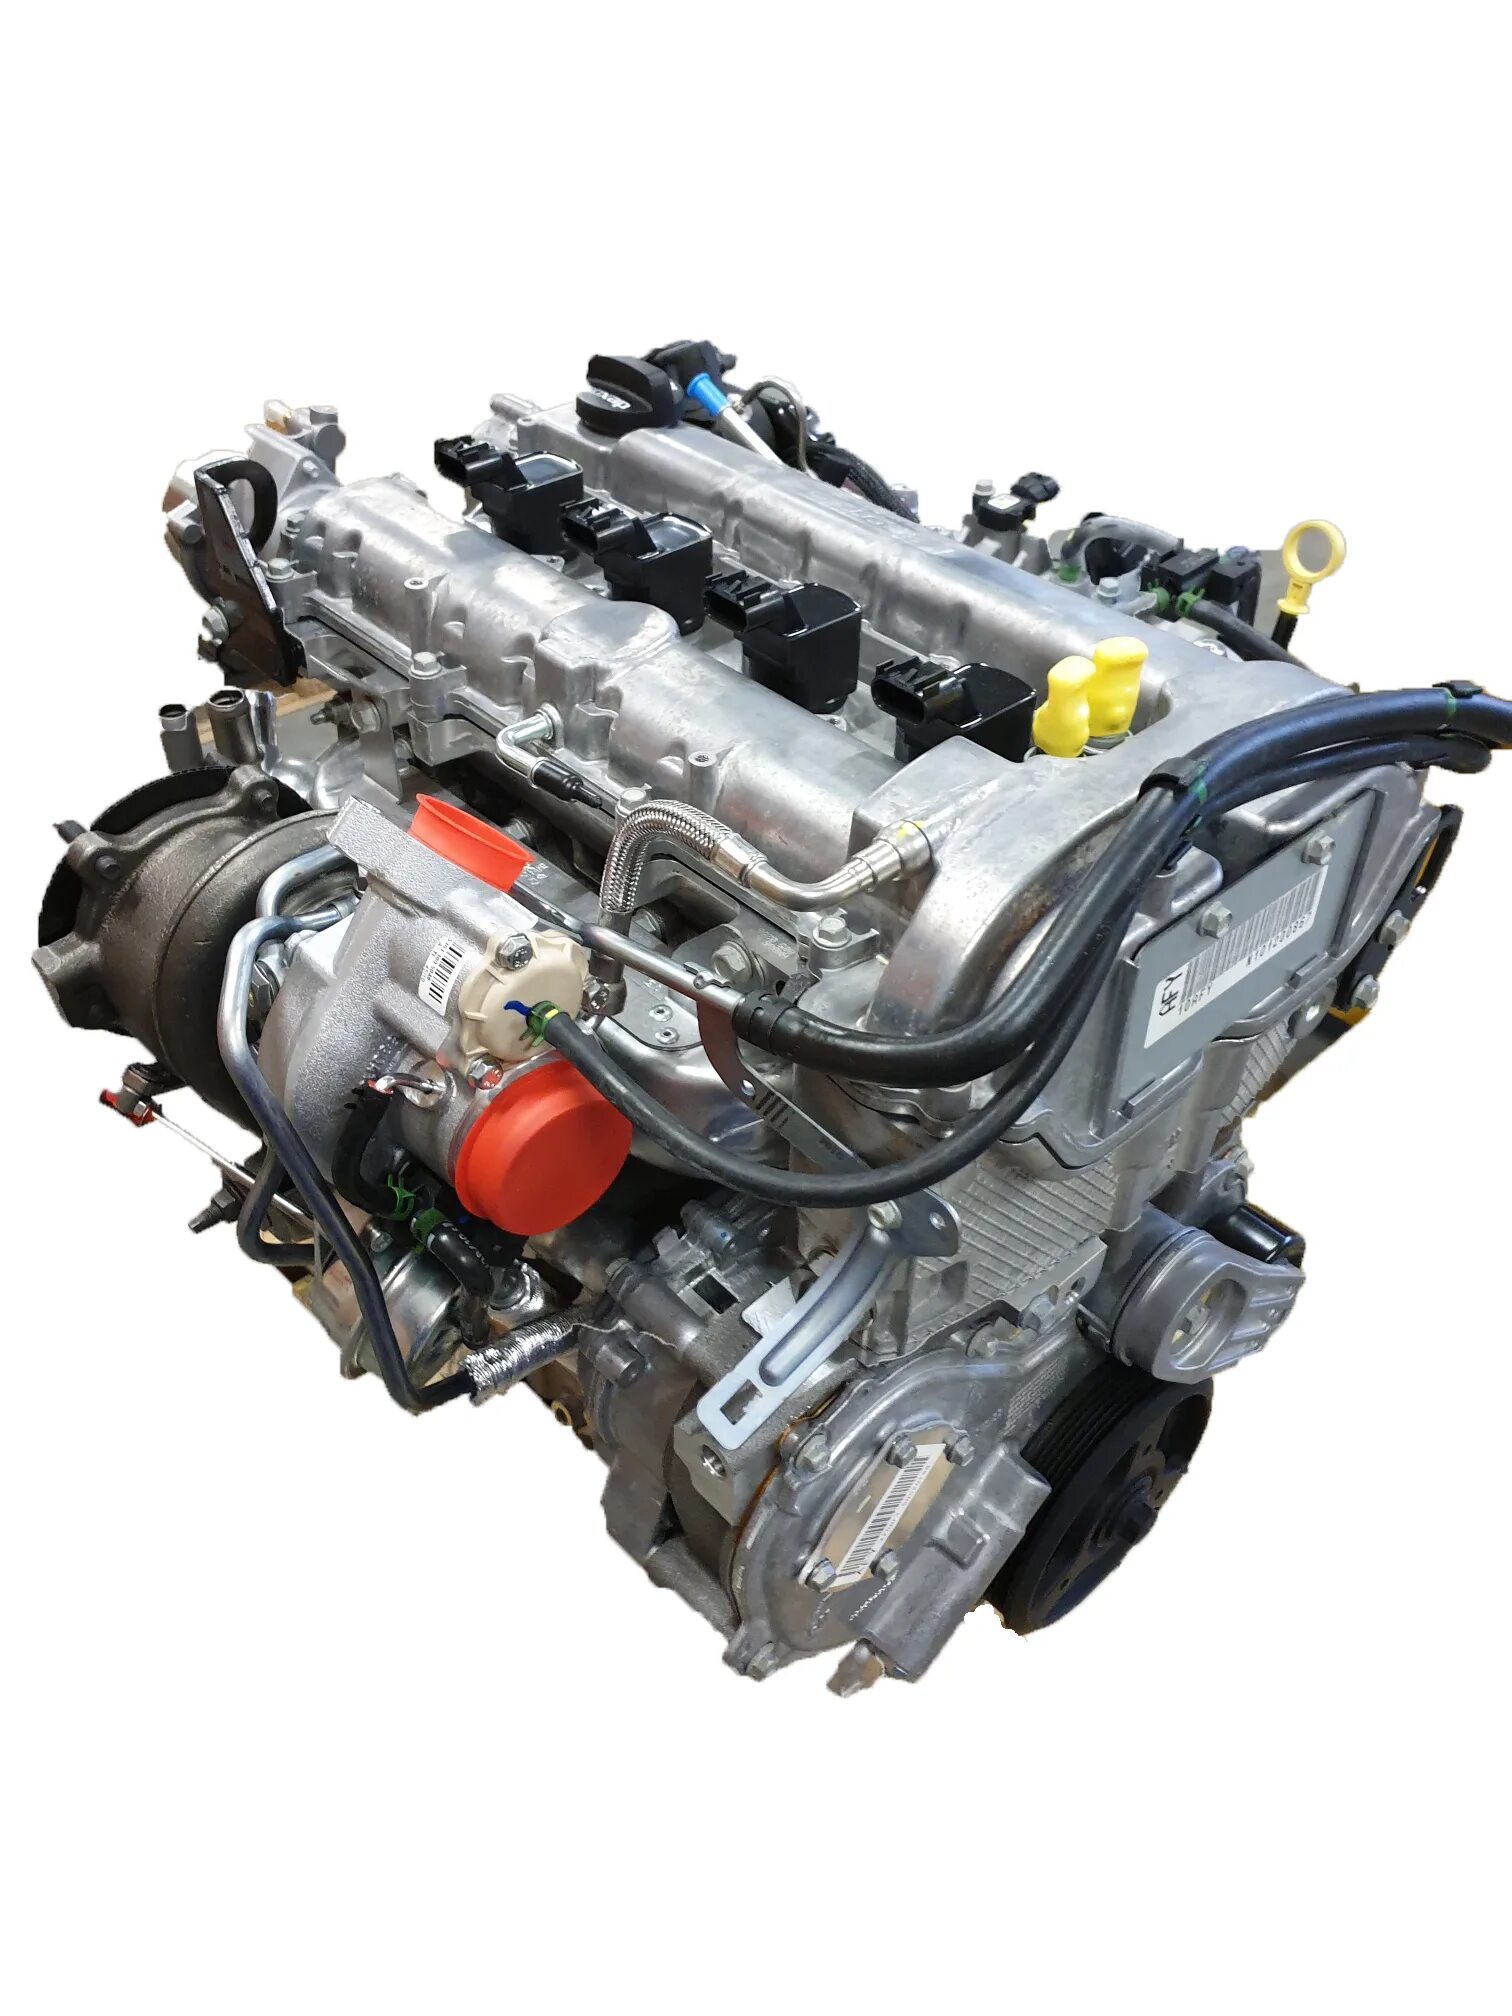 Двигатели opel 2.0. Двигатель a20nft a20nft Opel Insignia. Двигатель Опель Инсигния 2.0 турбо 220. A20nft a20nht двигатель Инсигния. Opel Insignia a20nht.